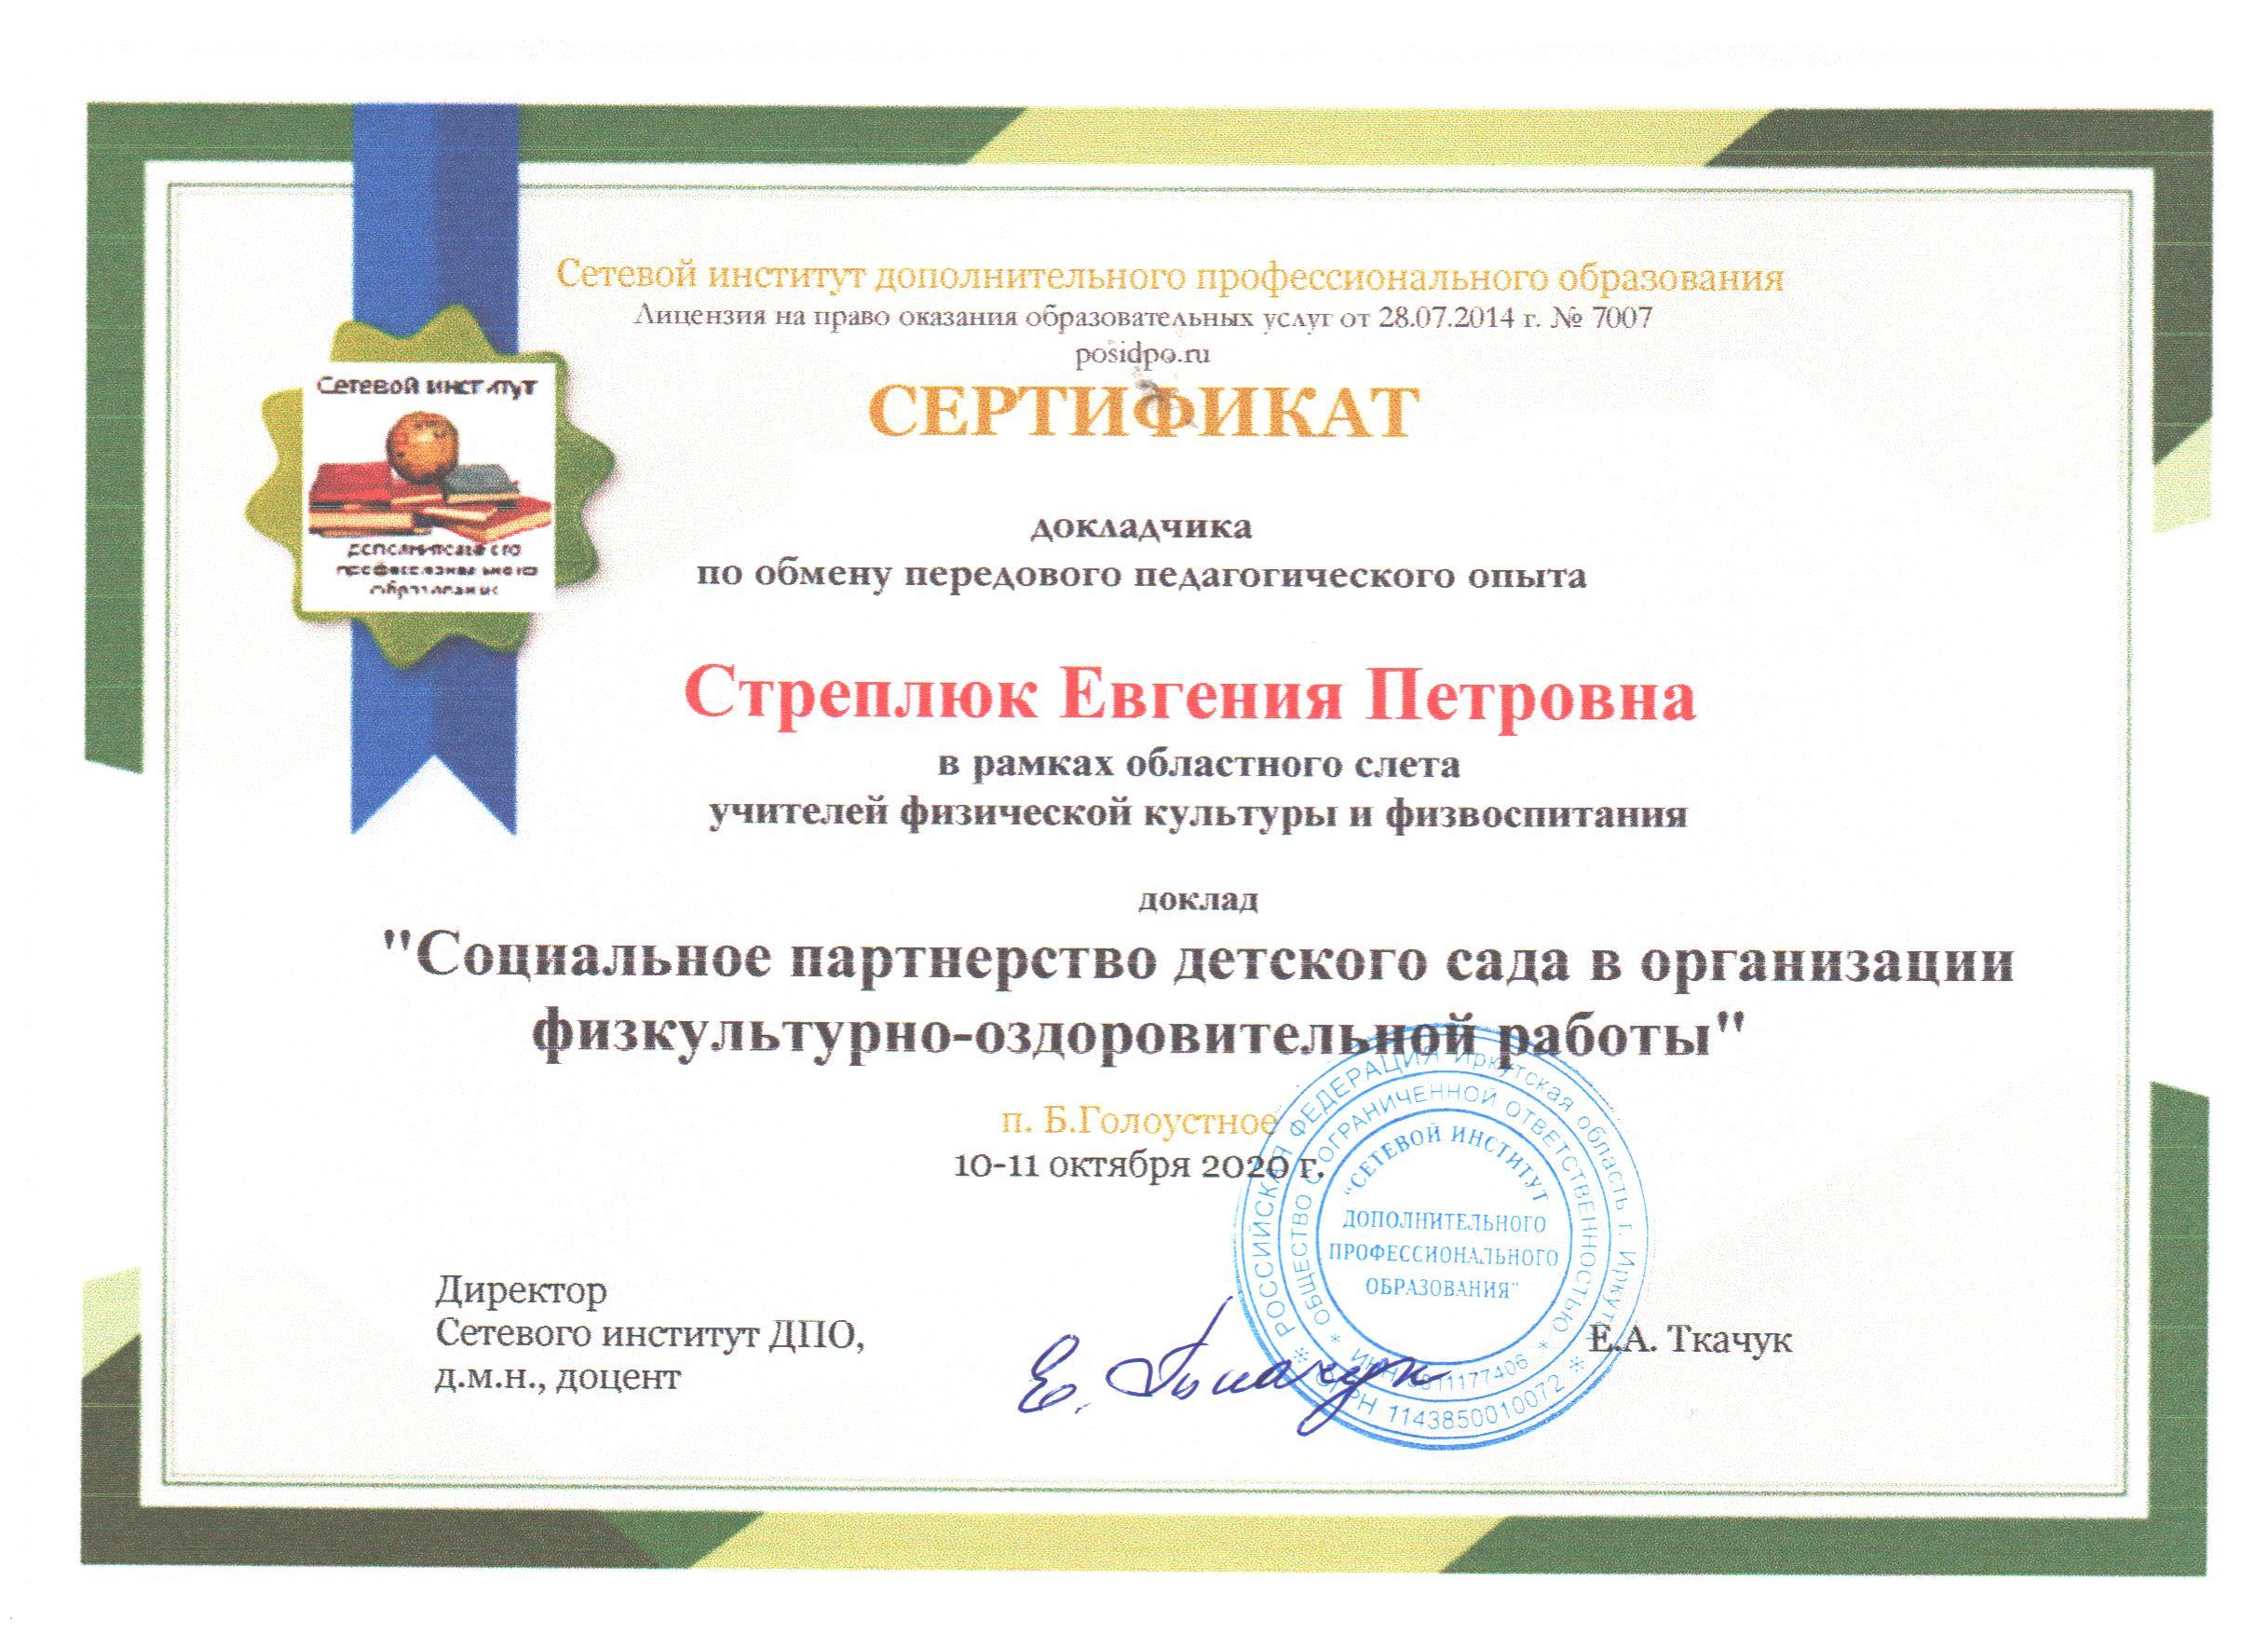 Сертификат ОблСлетФиз1